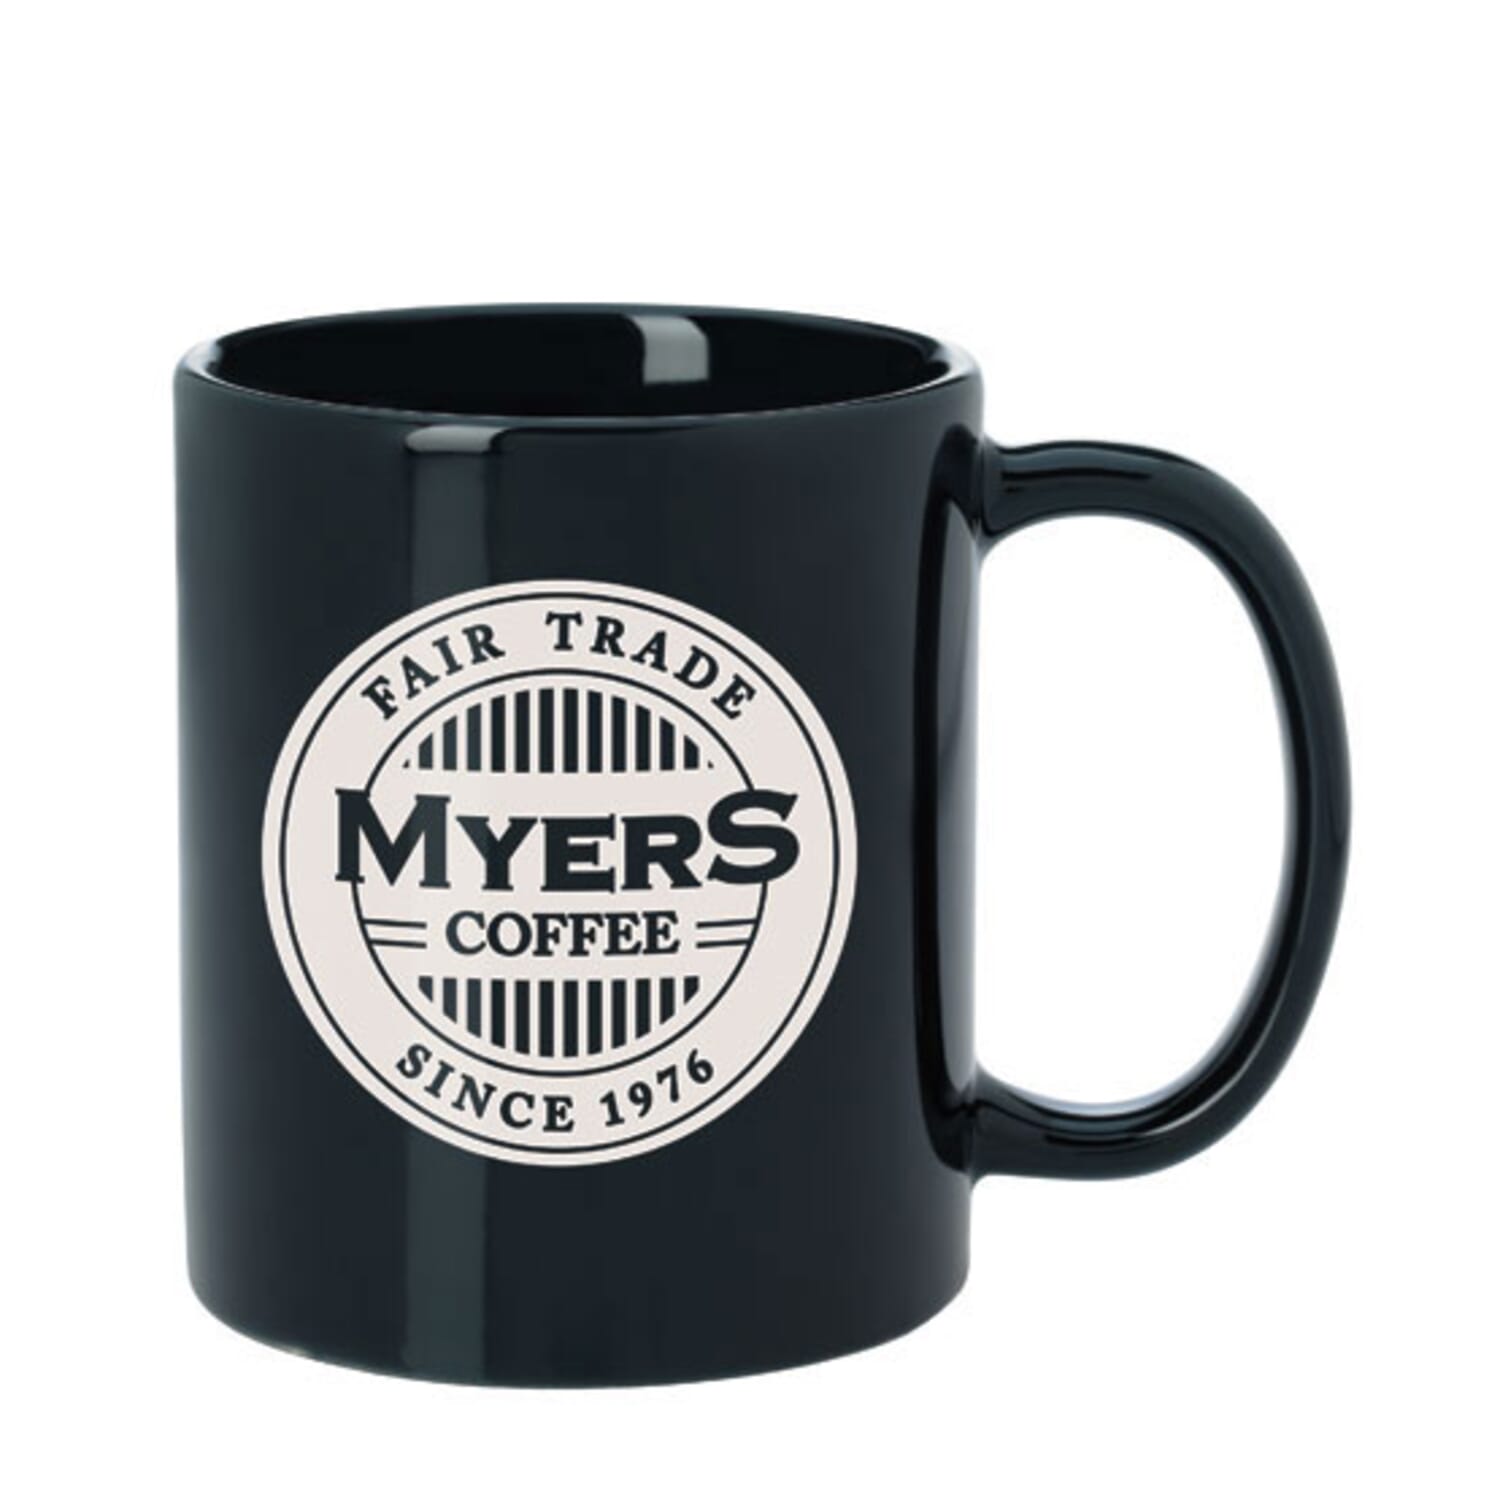 Black coffee mug